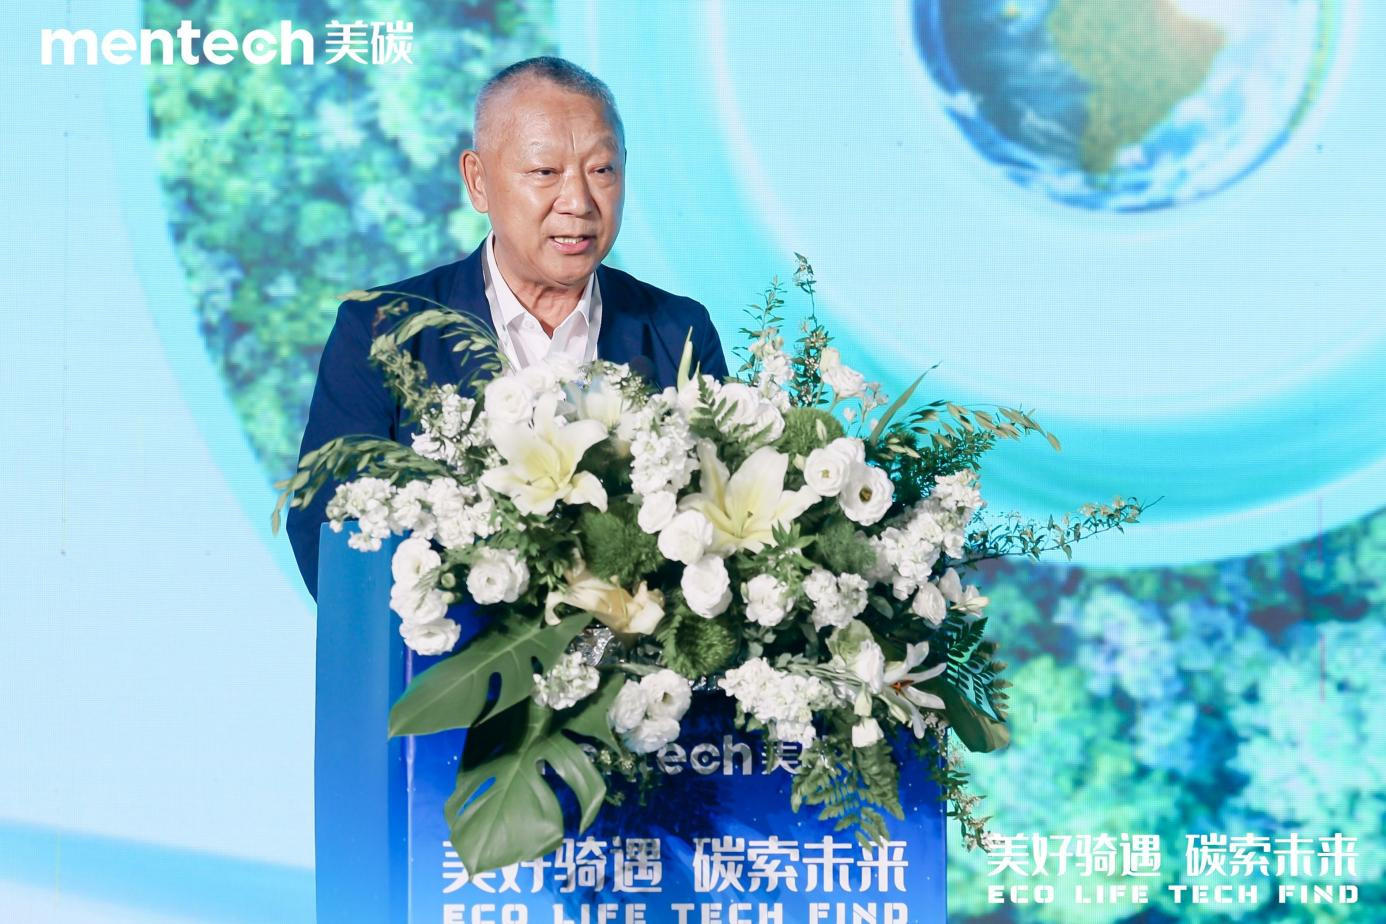 中国自行车运动协会副秘书长孙连滨发表致辞